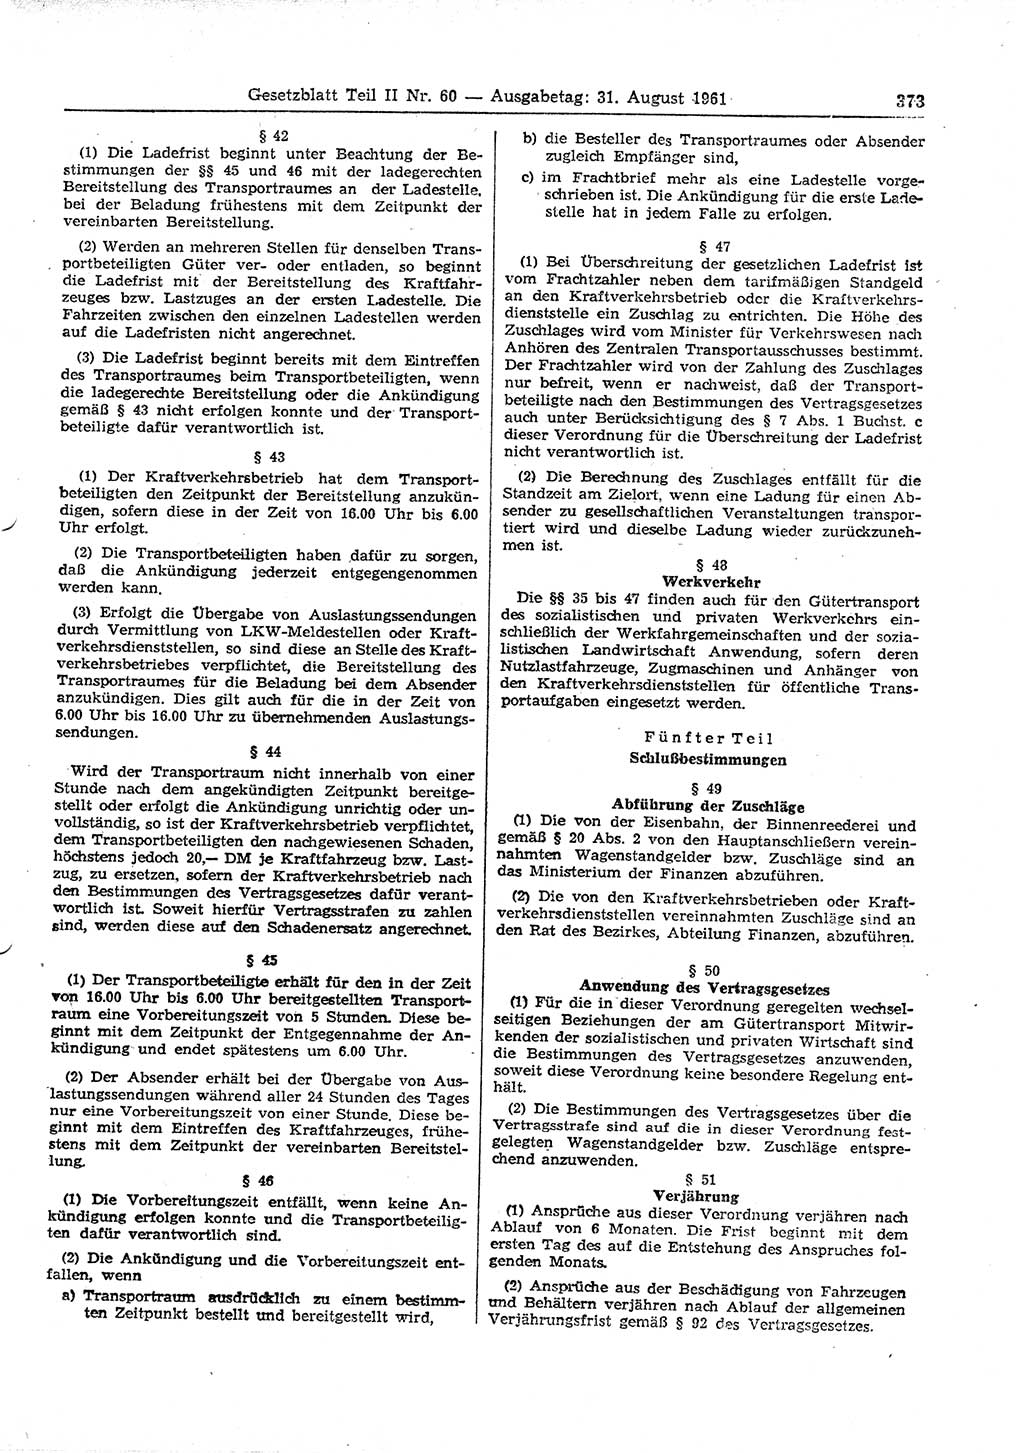 Gesetzblatt (GBl.) der Deutschen Demokratischen Republik (DDR) Teil ⅠⅠ 1961, Seite 373 (GBl. DDR ⅠⅠ 1961, S. 373)